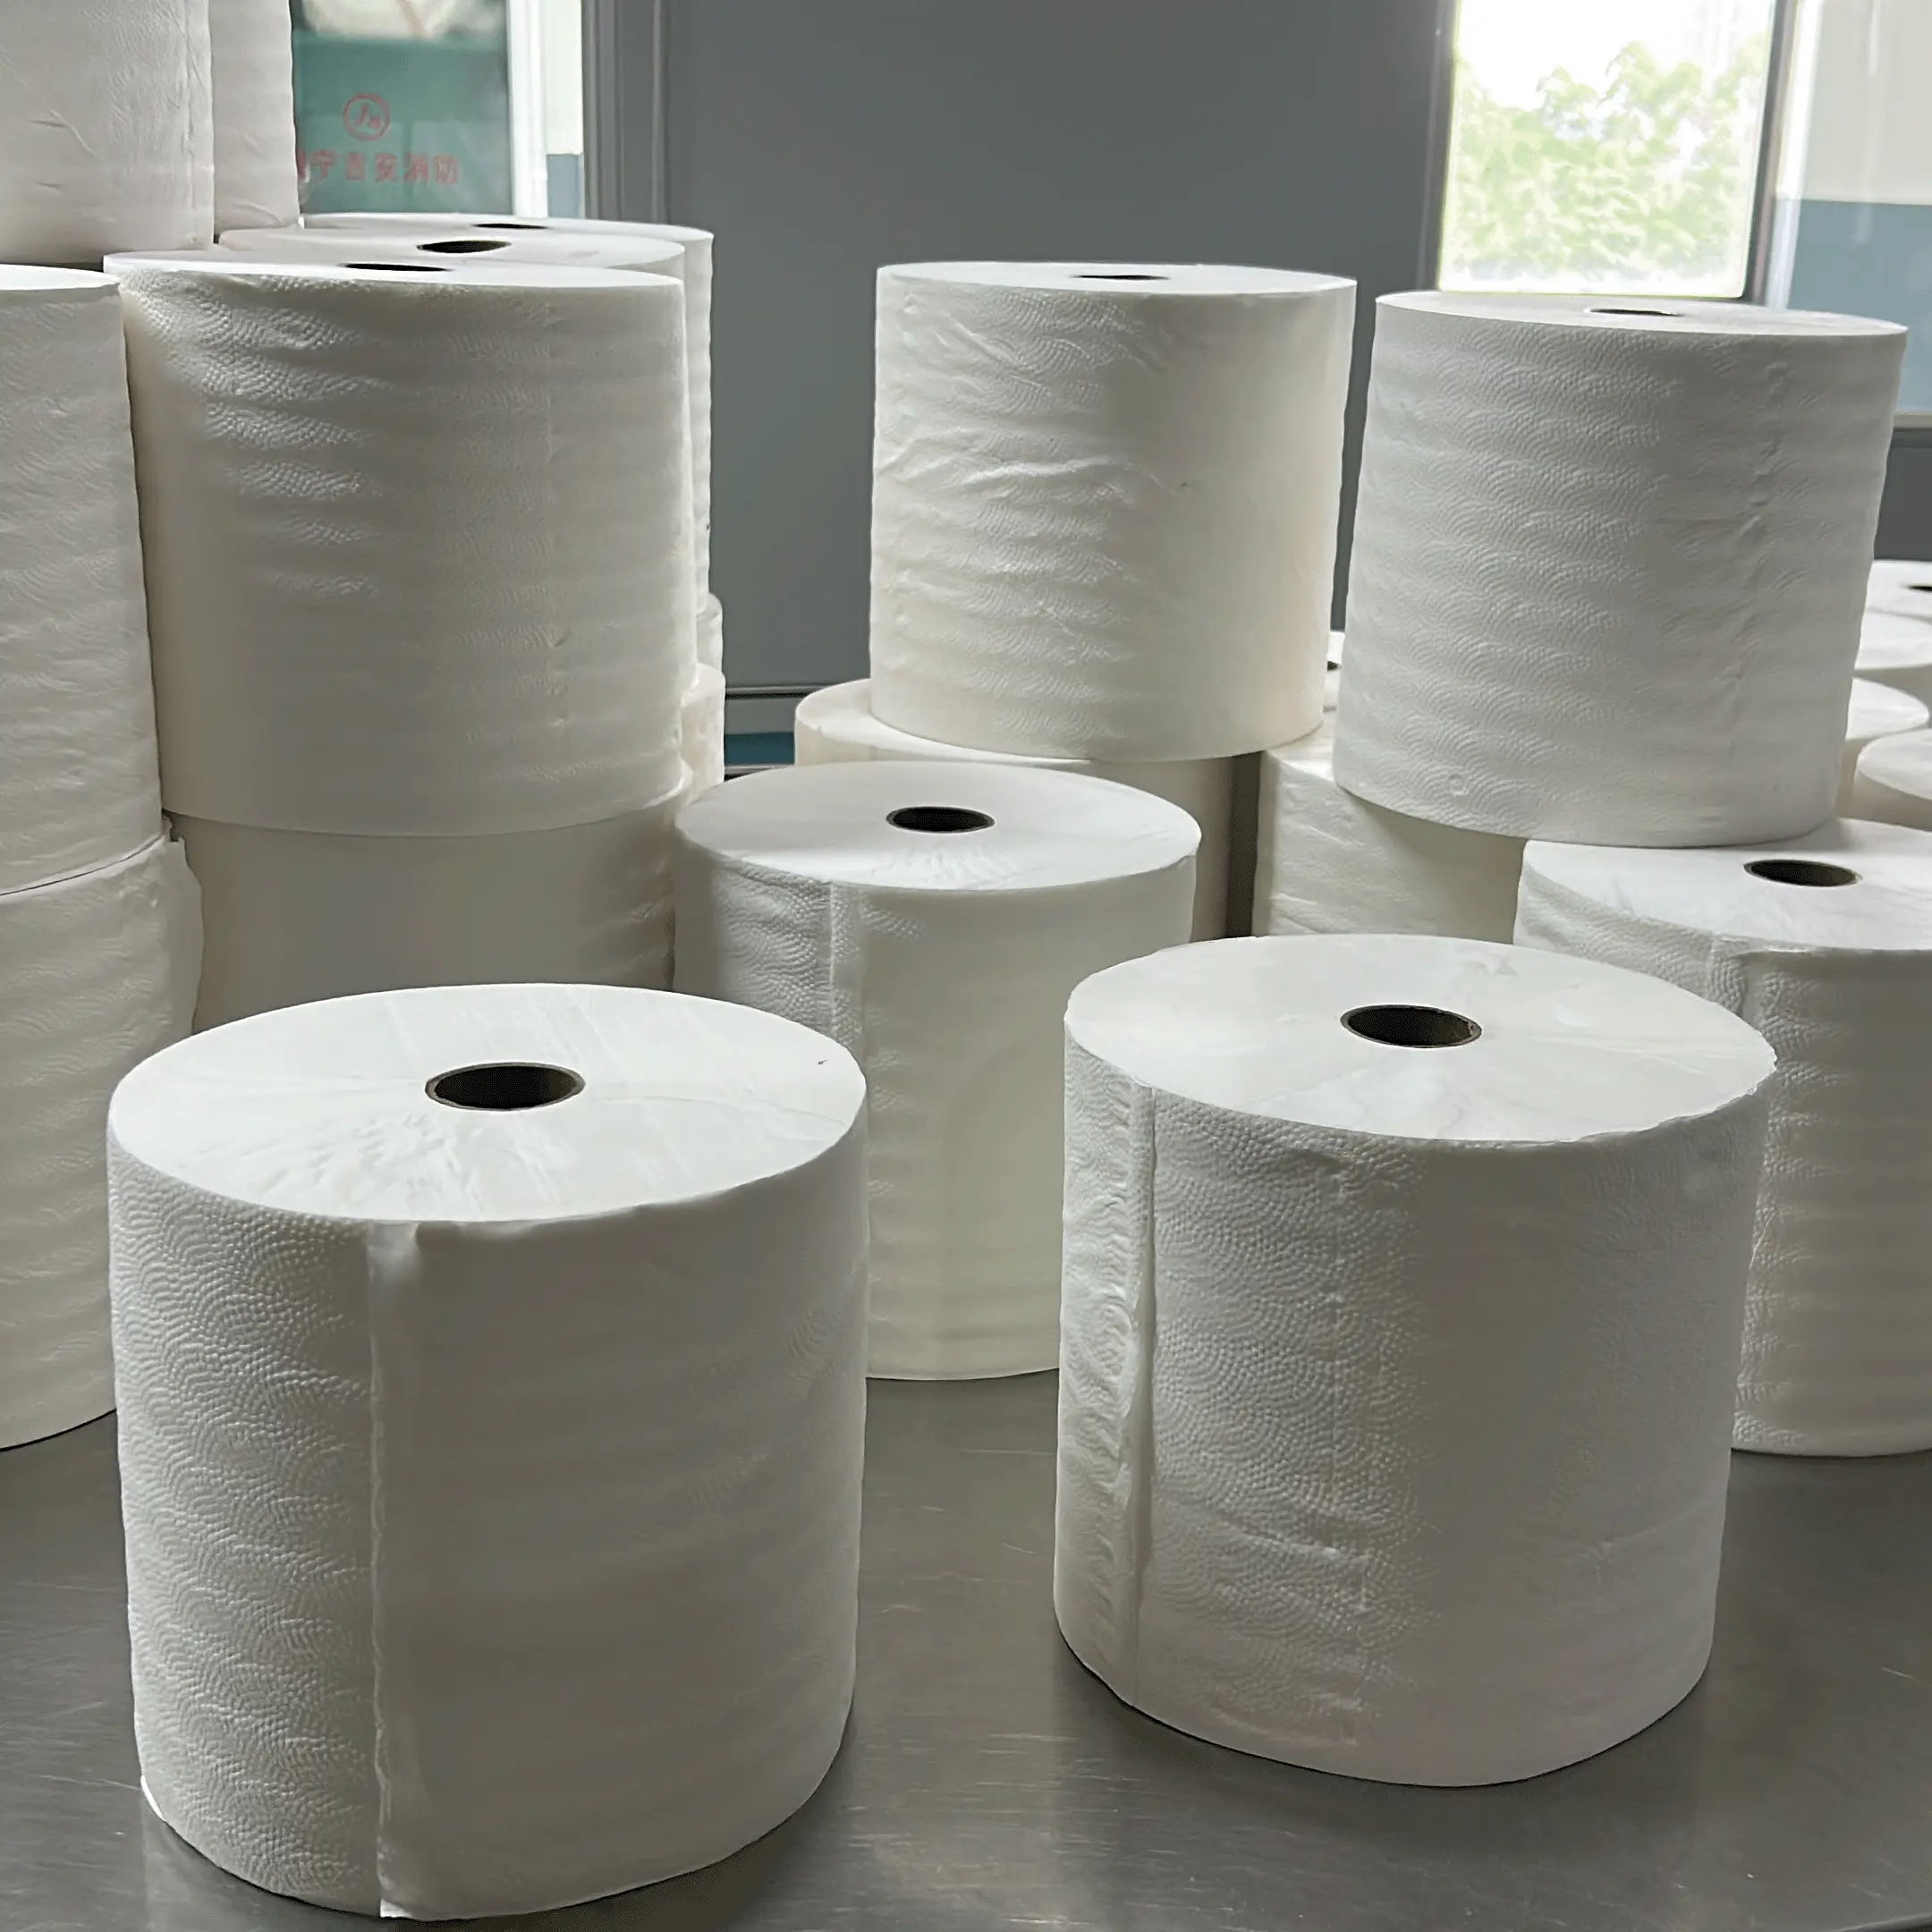 Rolos de papel toalha comercial enorme personalizado em relevo 2 camadas de papel higiênico de polpa de bambu toalha de mão grande rolo de papel